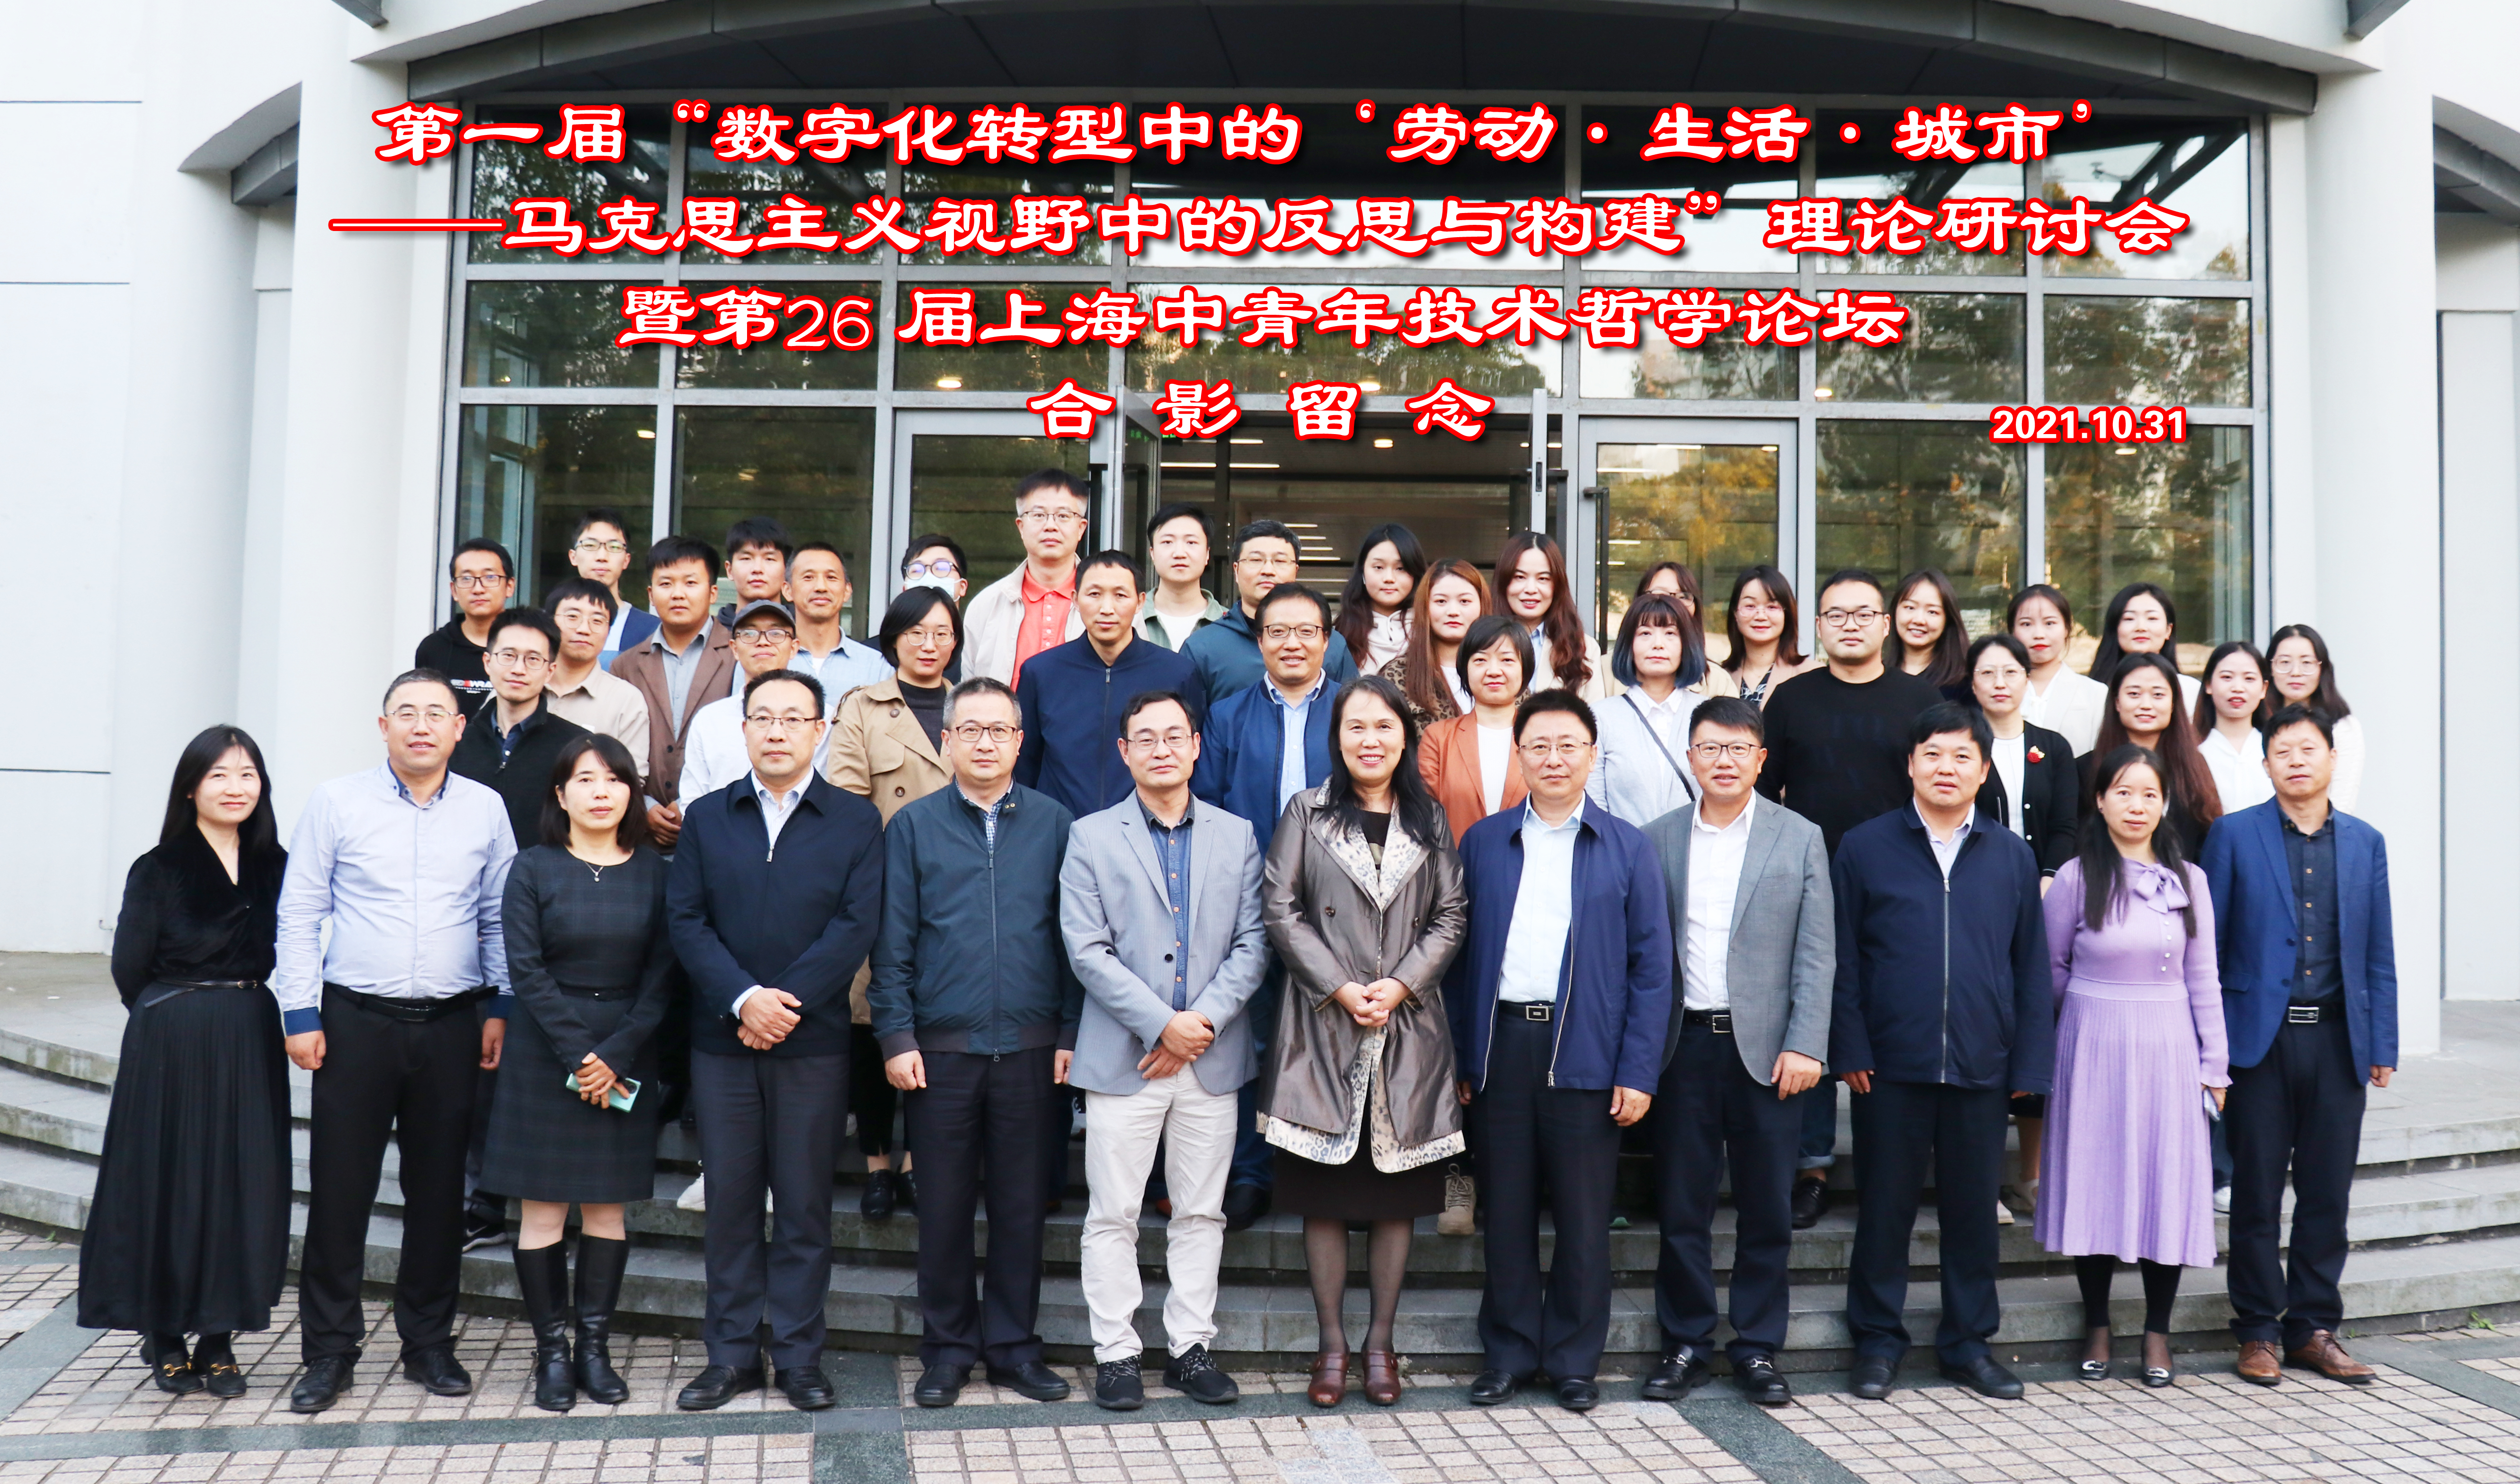 第一届“数字化转型中的‘劳动·生活·城市’——马克思主义视野中的反思与构建”理论研讨会暨第26届上海中青年技术哲学论坛。